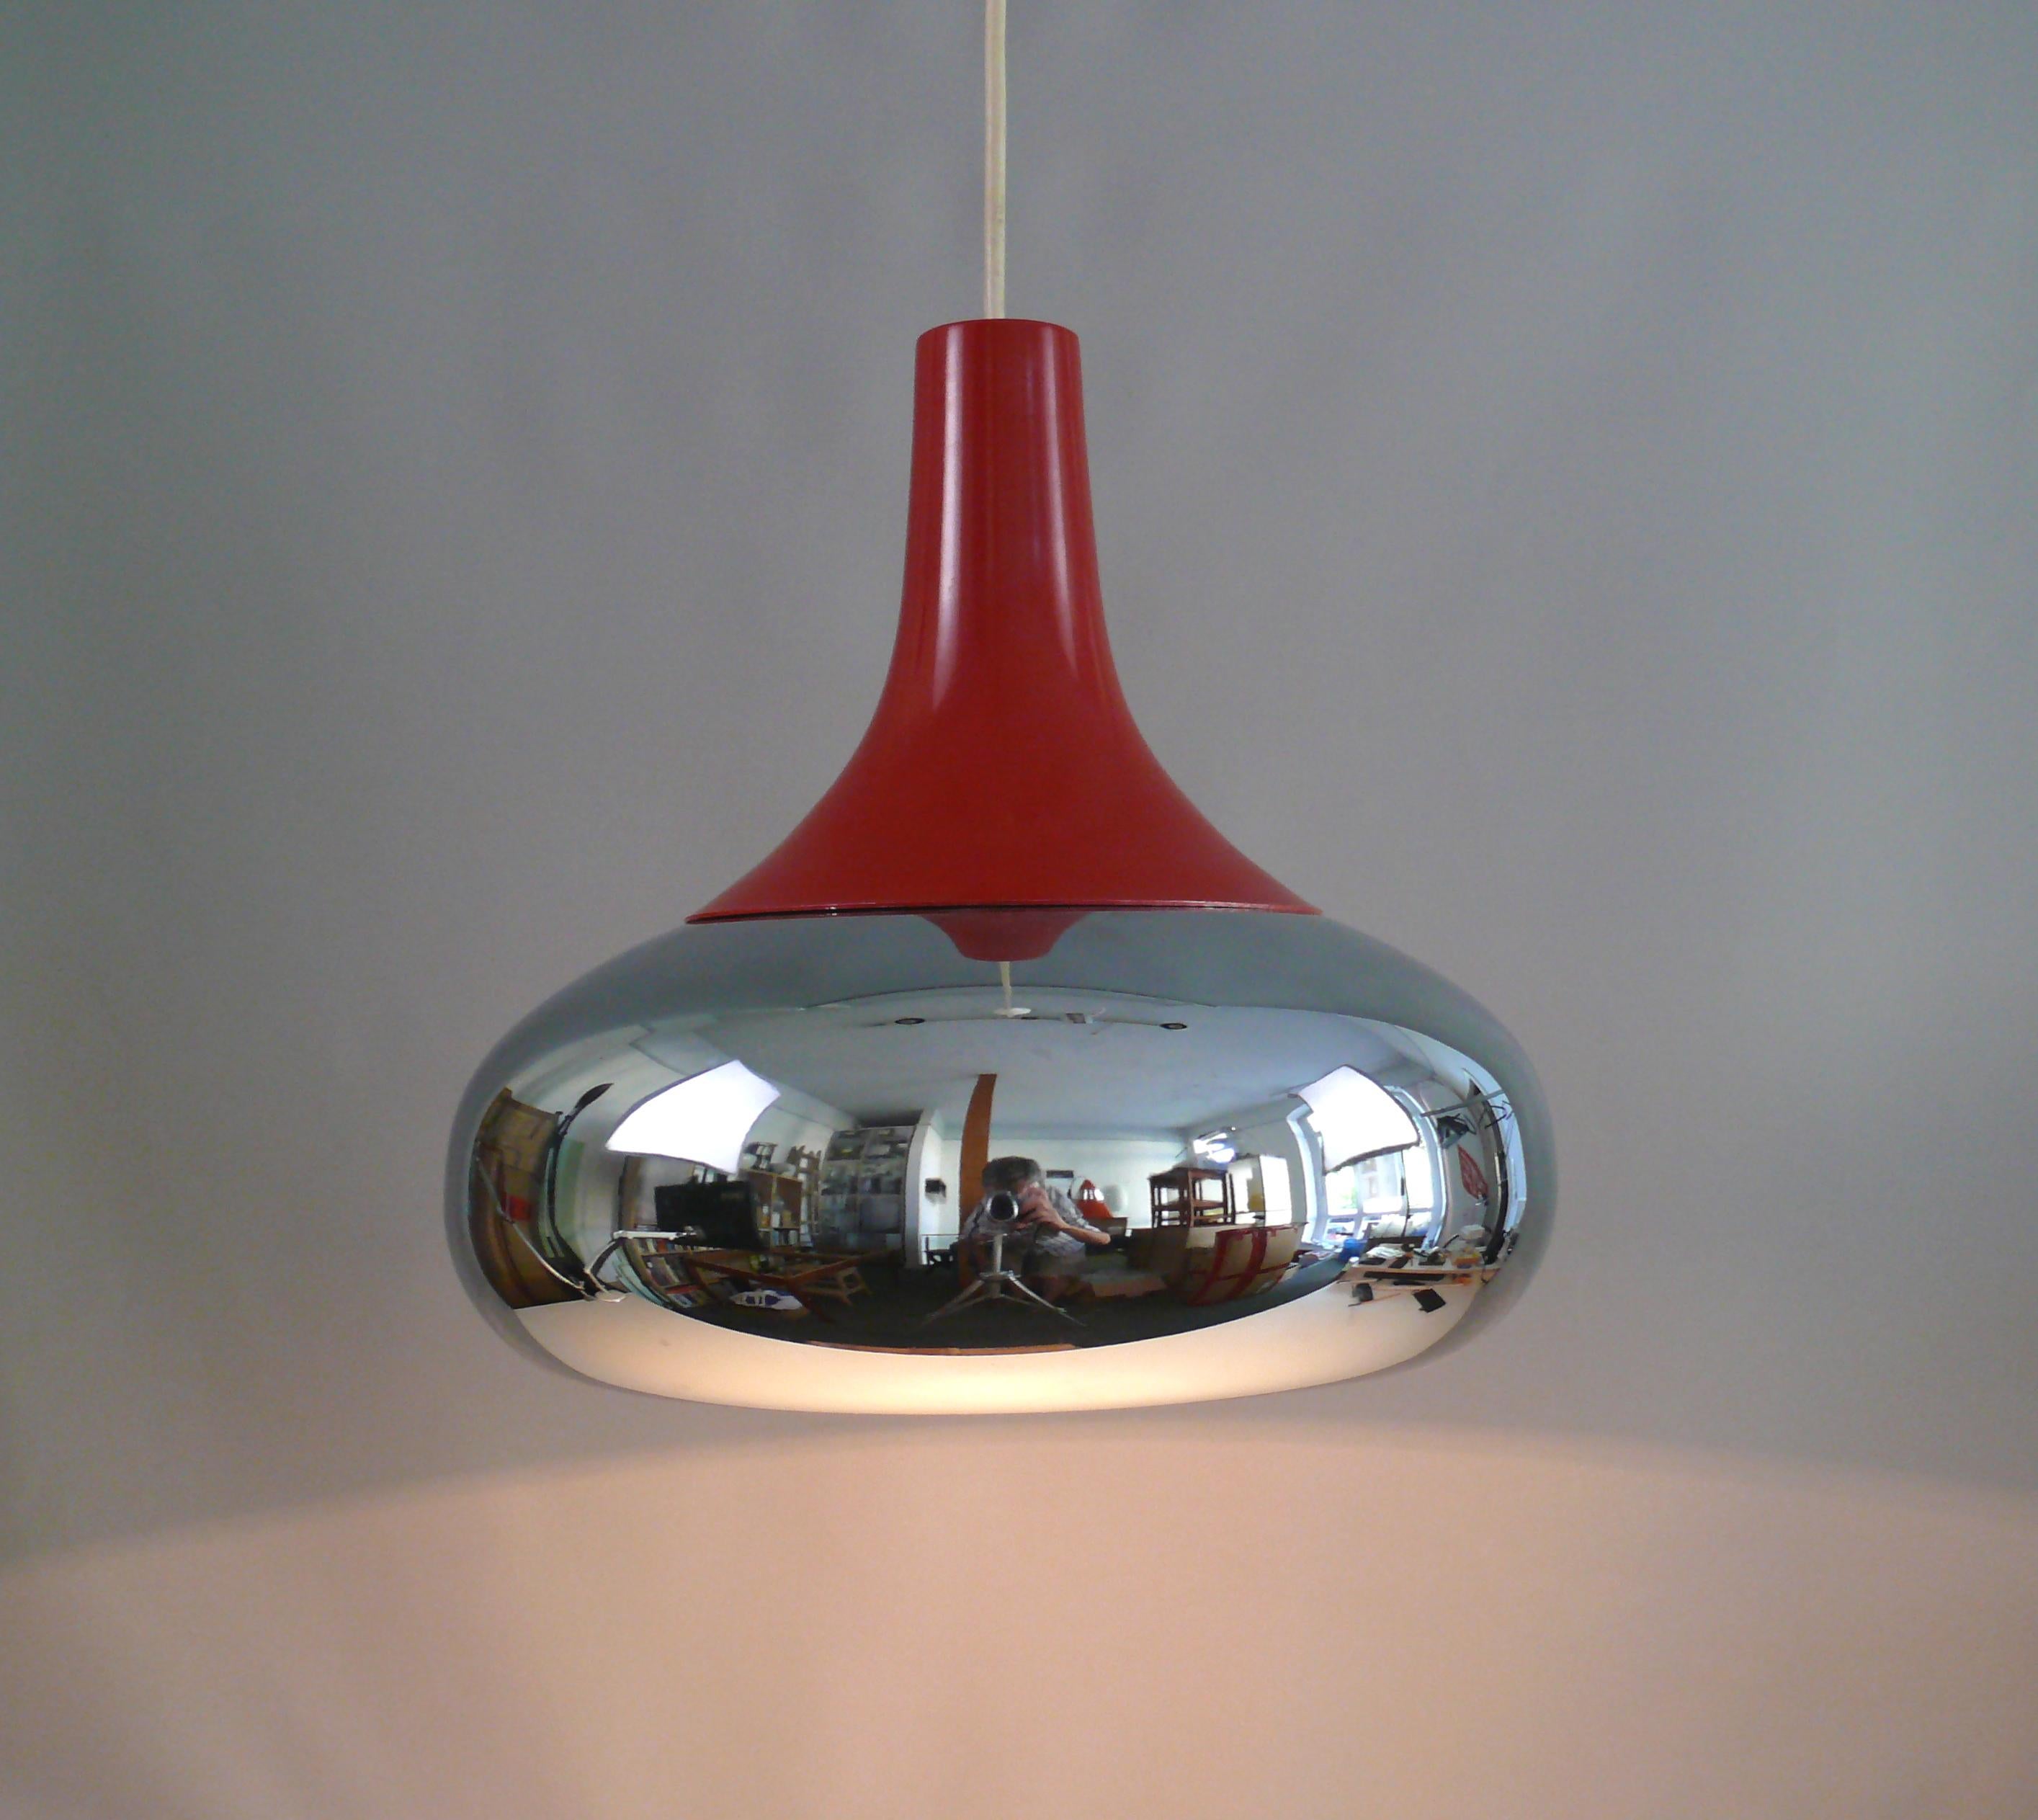 Chrom-Pendelleuchte aus den 1960er Jahren mit rot lackierter Metallabdeckung, ohne Label.

Weltraumzeitalter-Design: Die Leuchte hat ein typisches Design der 1960er Jahre mit einem UFO-förmigen, verchromten Lampenschirm. Der Schirm ist auf der